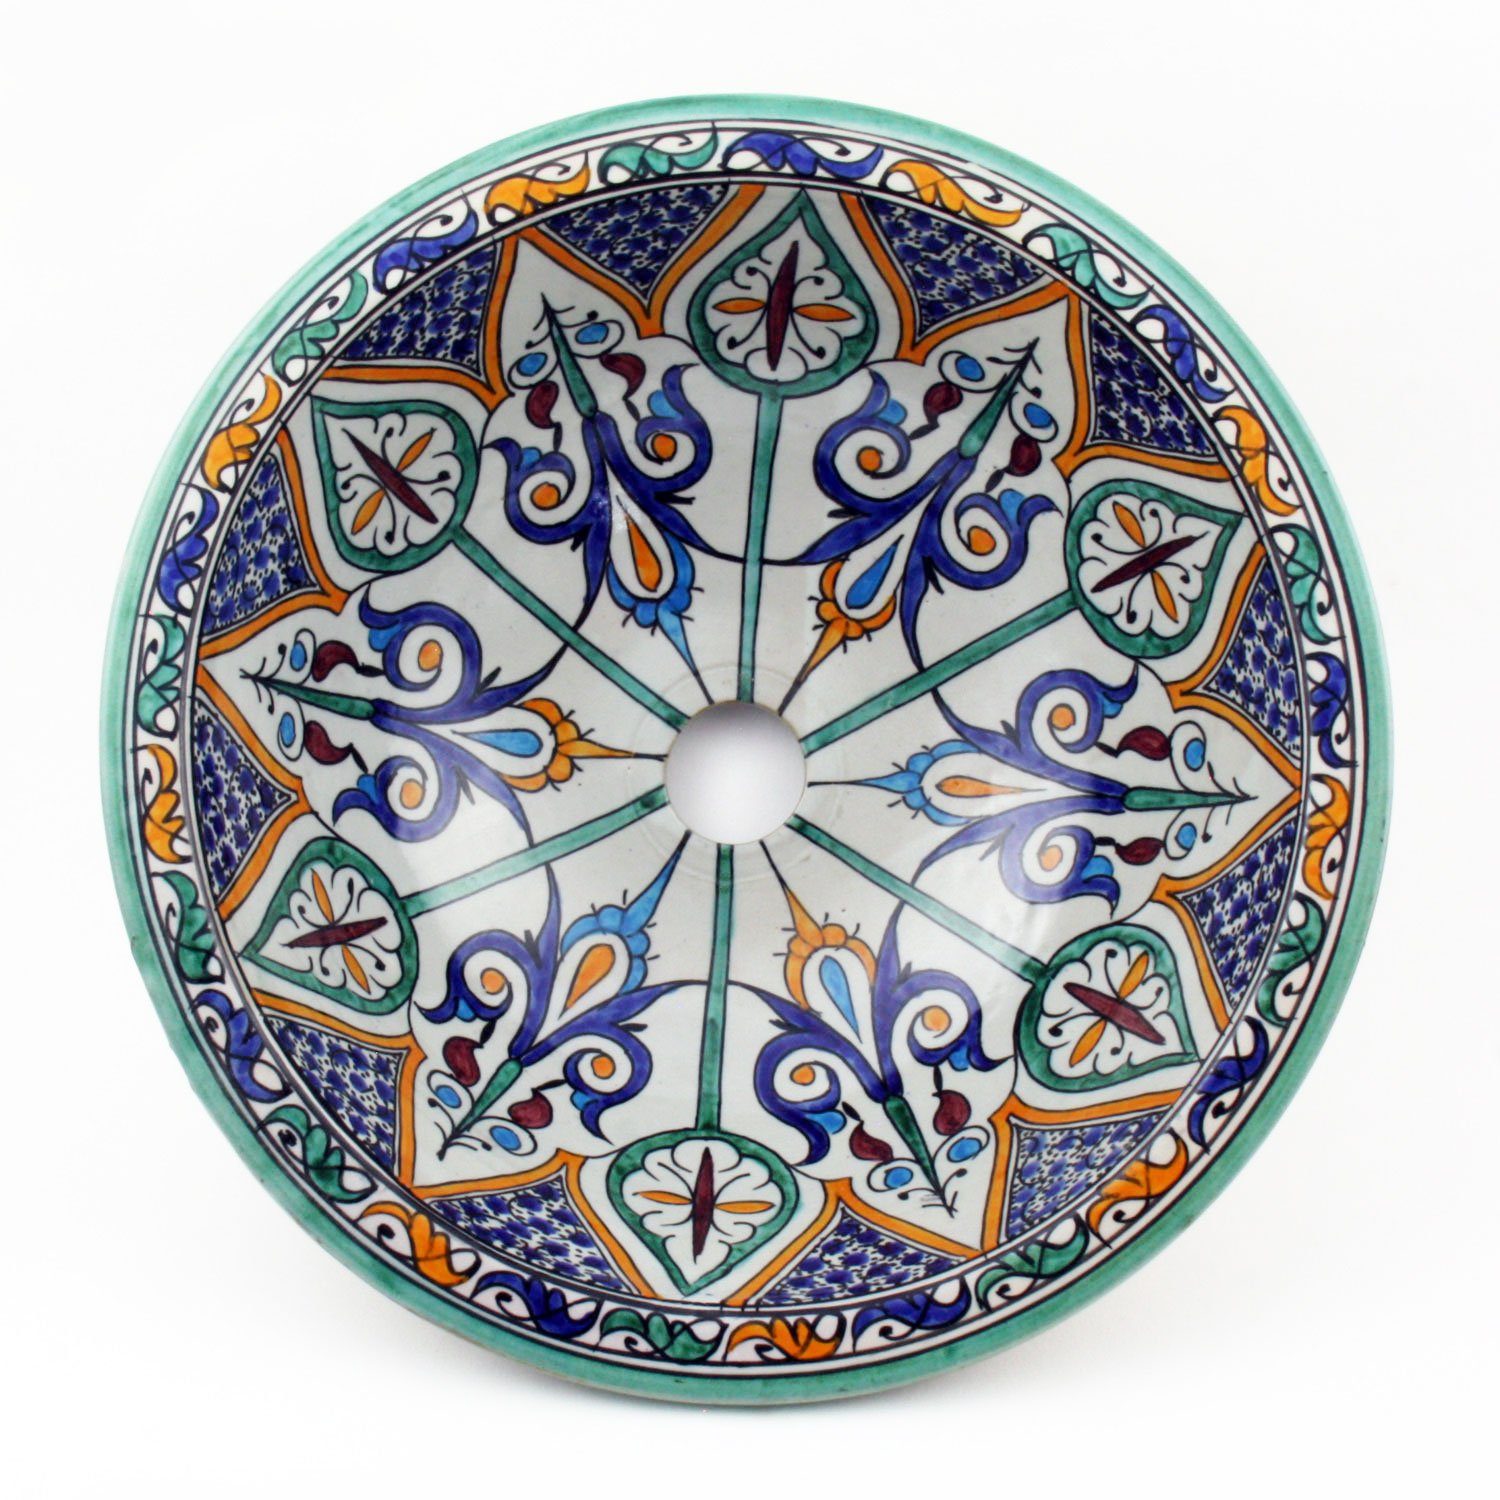 Casa Moro Waschbecken Orientalisches Keramik-Waschbecken Fes31 handbemalt rund (marokkanisches Aufsatzbecken bunt handbemalt, Durchmesser 35 cm aus Marokko), Handwaschbecken für ein schönes Badezimmer WB35202